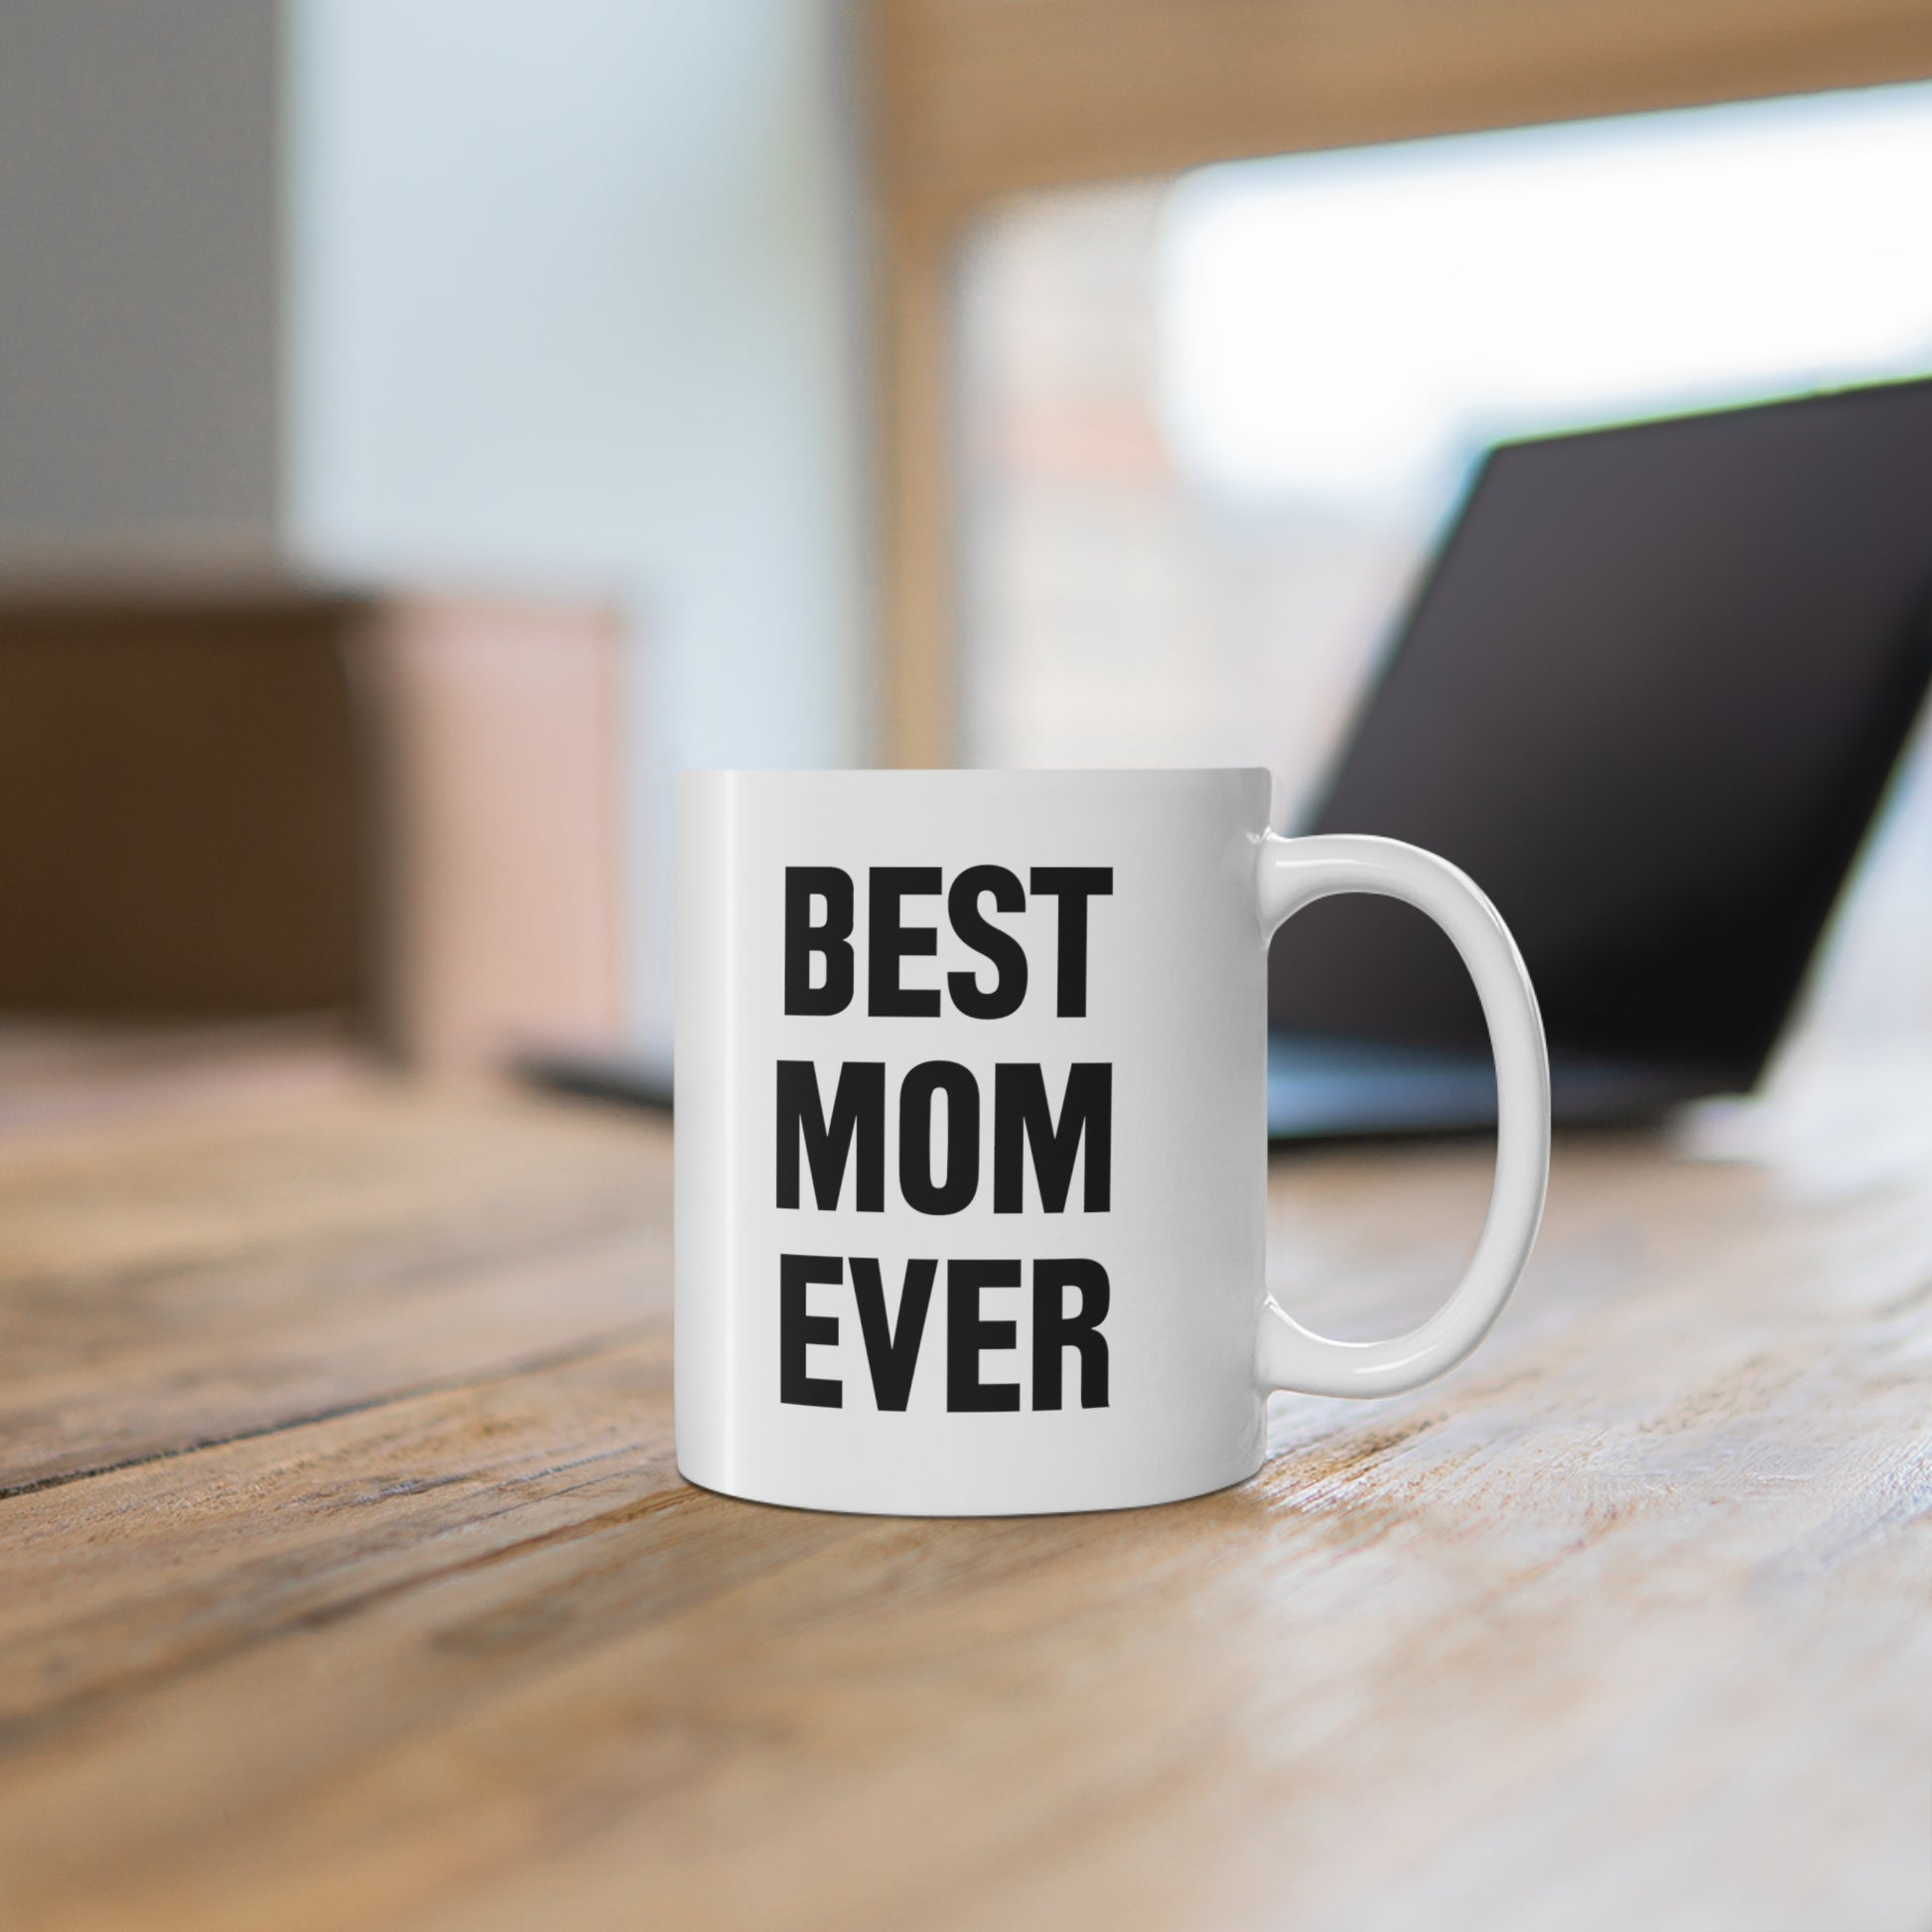 11oz ceramic mug with quote Best Mom Ever